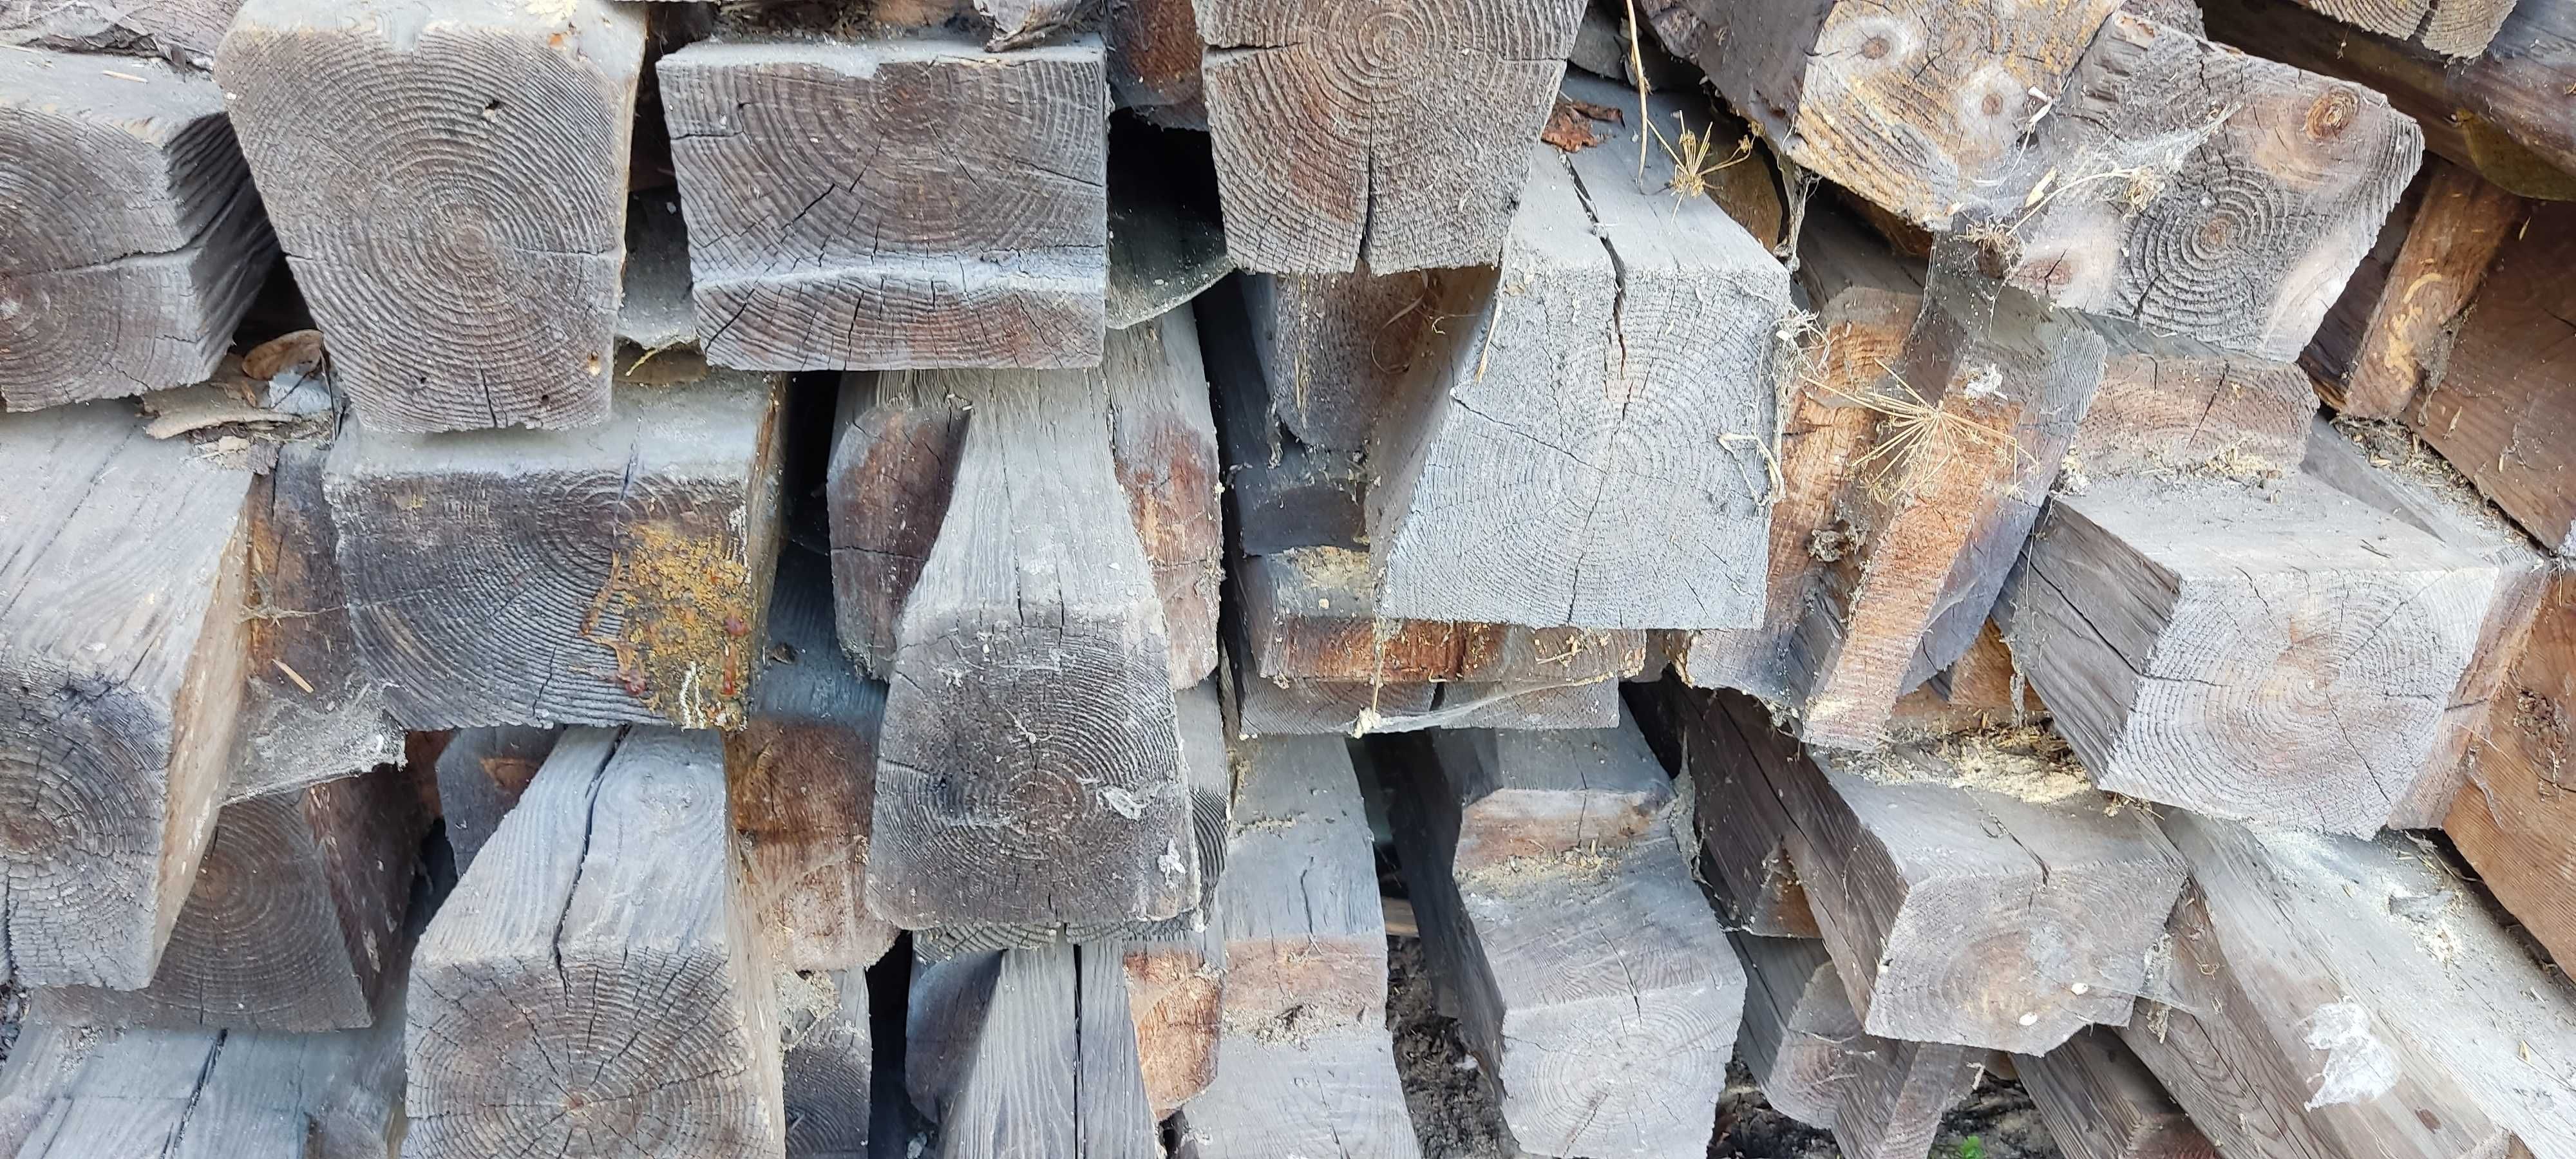 Stare drewniane belki po rozbiórce